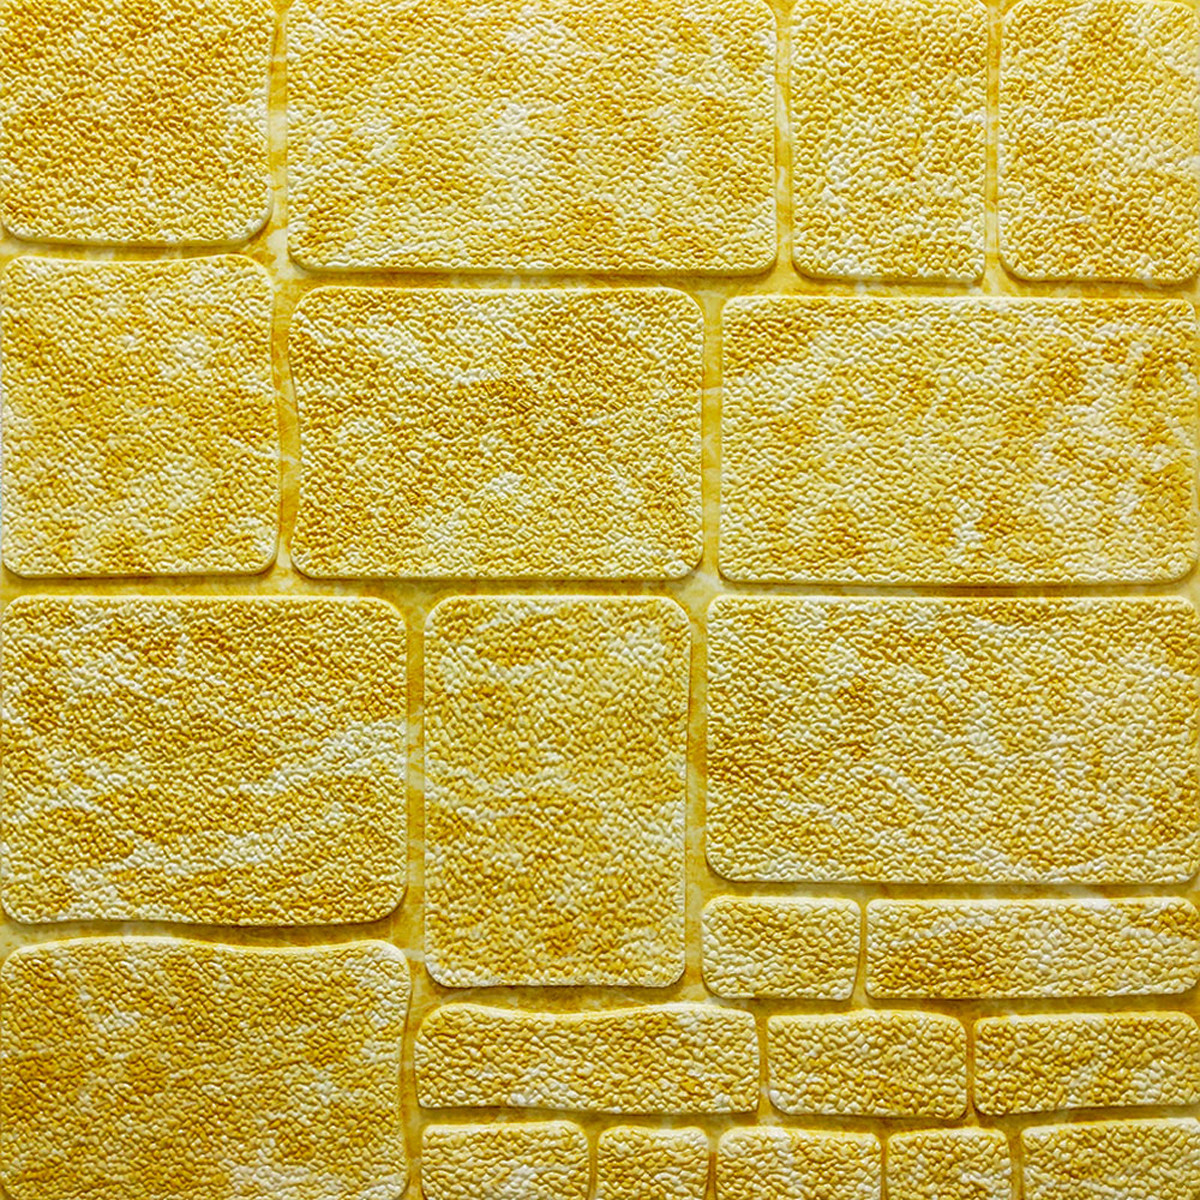 Самоклеюча декоративна 3D панель камінь жовтий мармур 700х700х7мм (152)